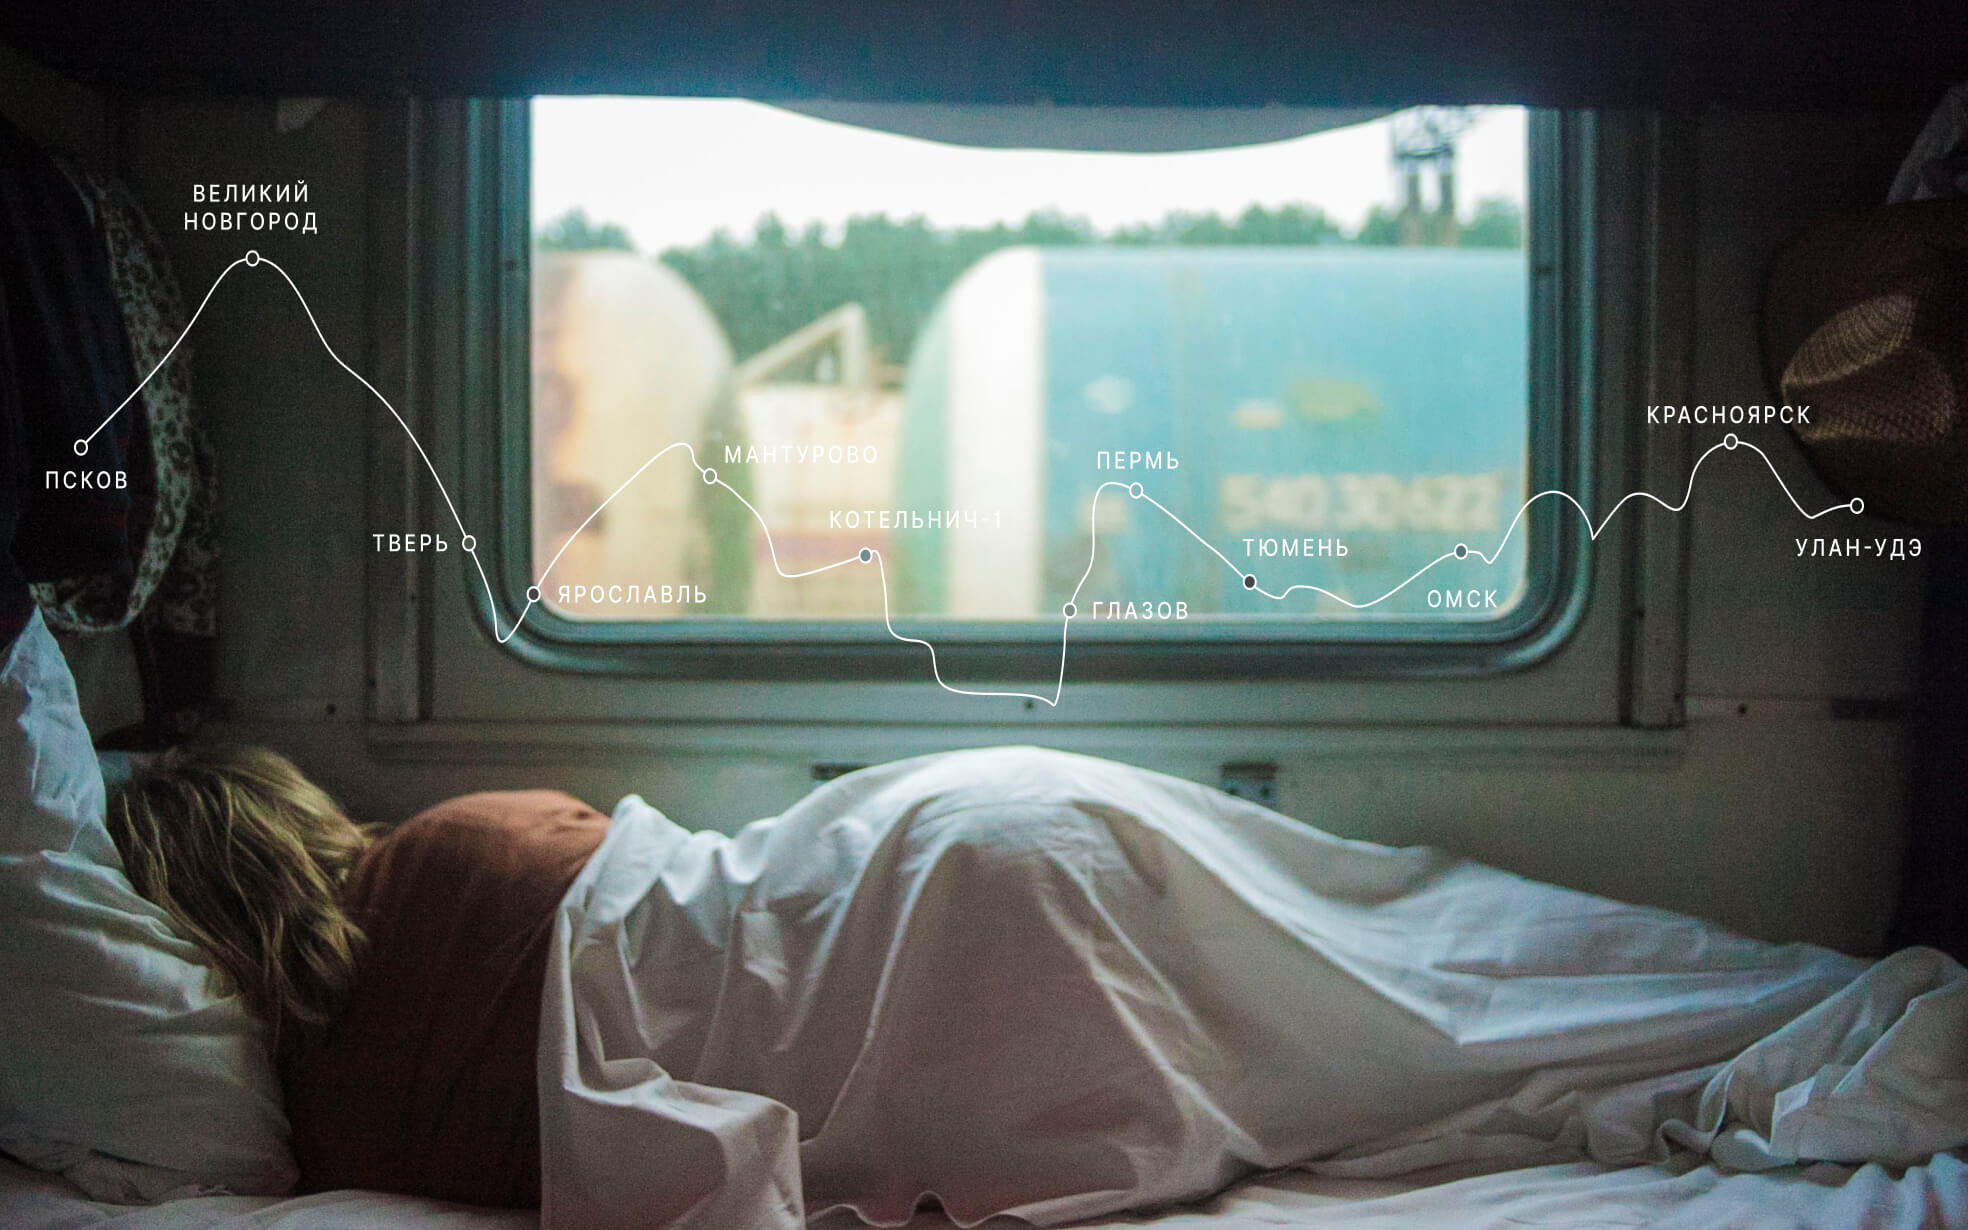 Изображение с девушкой, которая лежит на нижней полке у окна в поезде